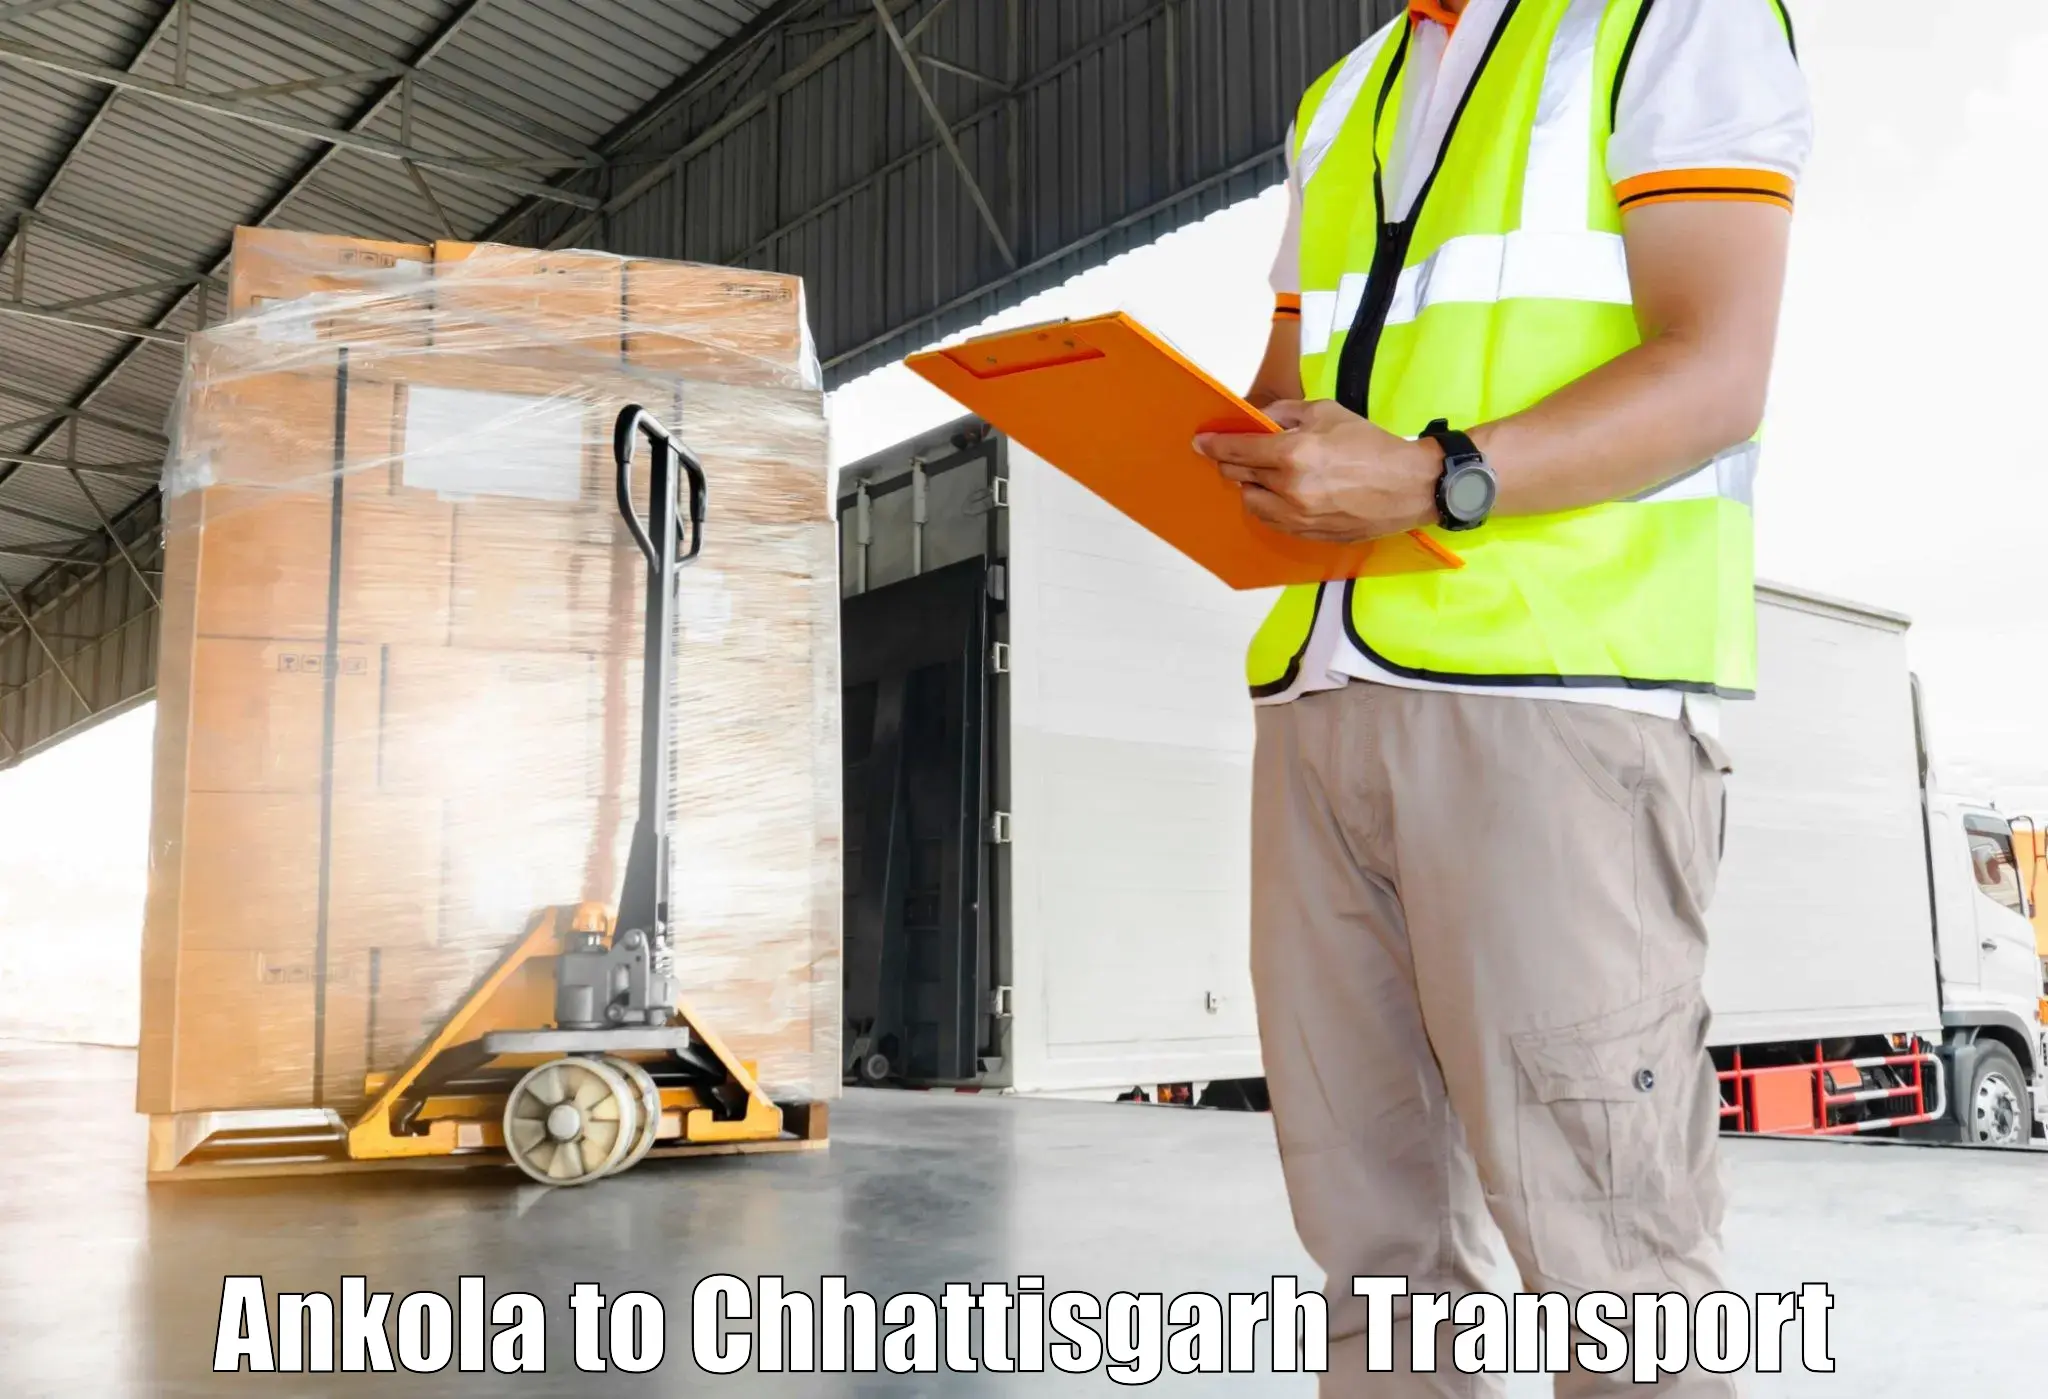 Transportation services Ankola to Bhatapara